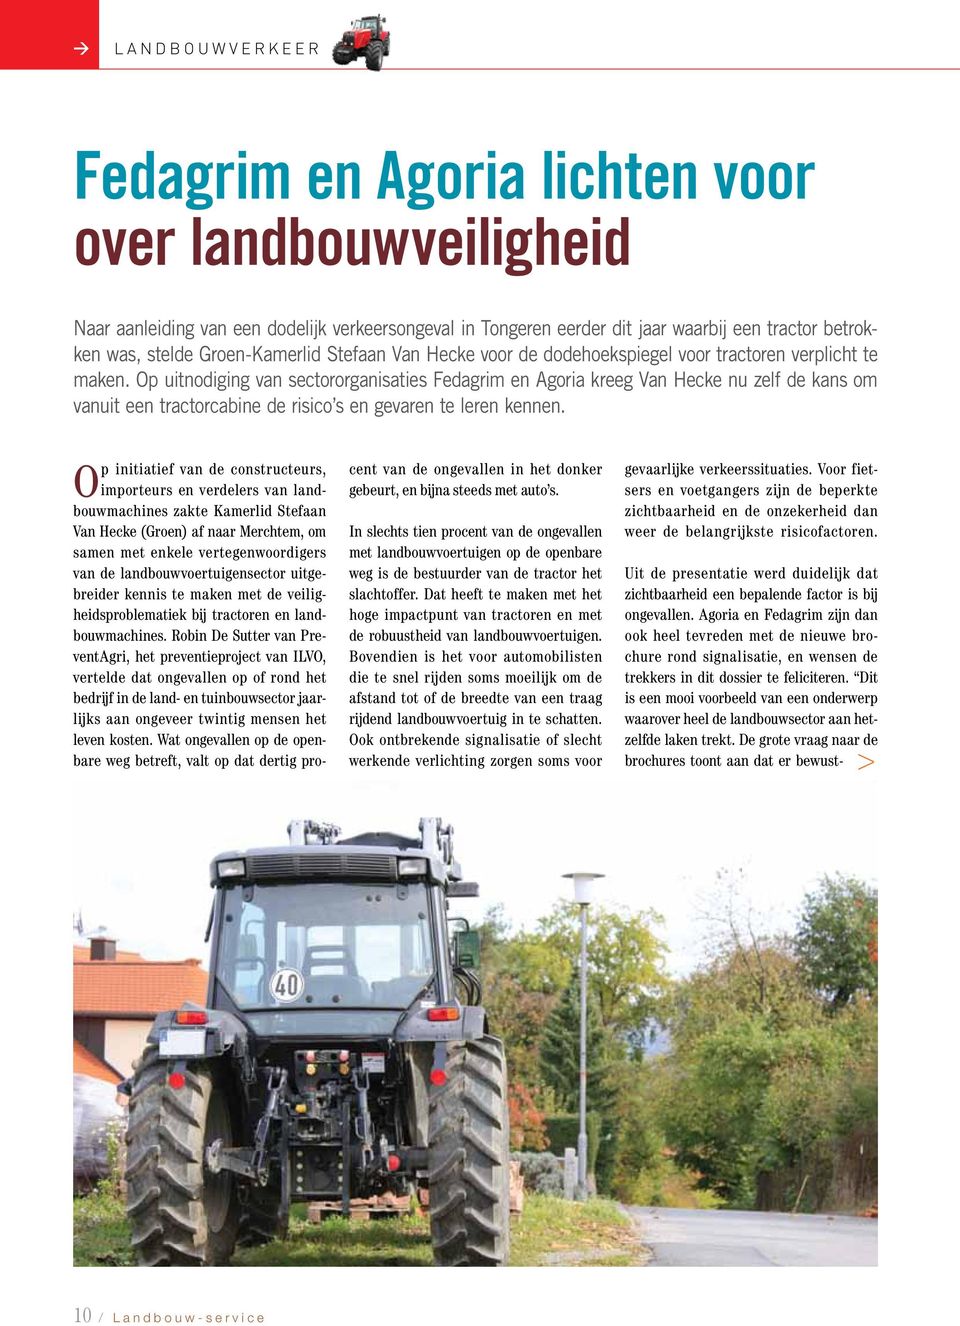 Op uitnodiging van sectororganisaties Fedagrim en Agoria kreeg Van Hecke nu zelf de kans om vanuit een tractorcabine de risico s en gevaren te leren kennen.